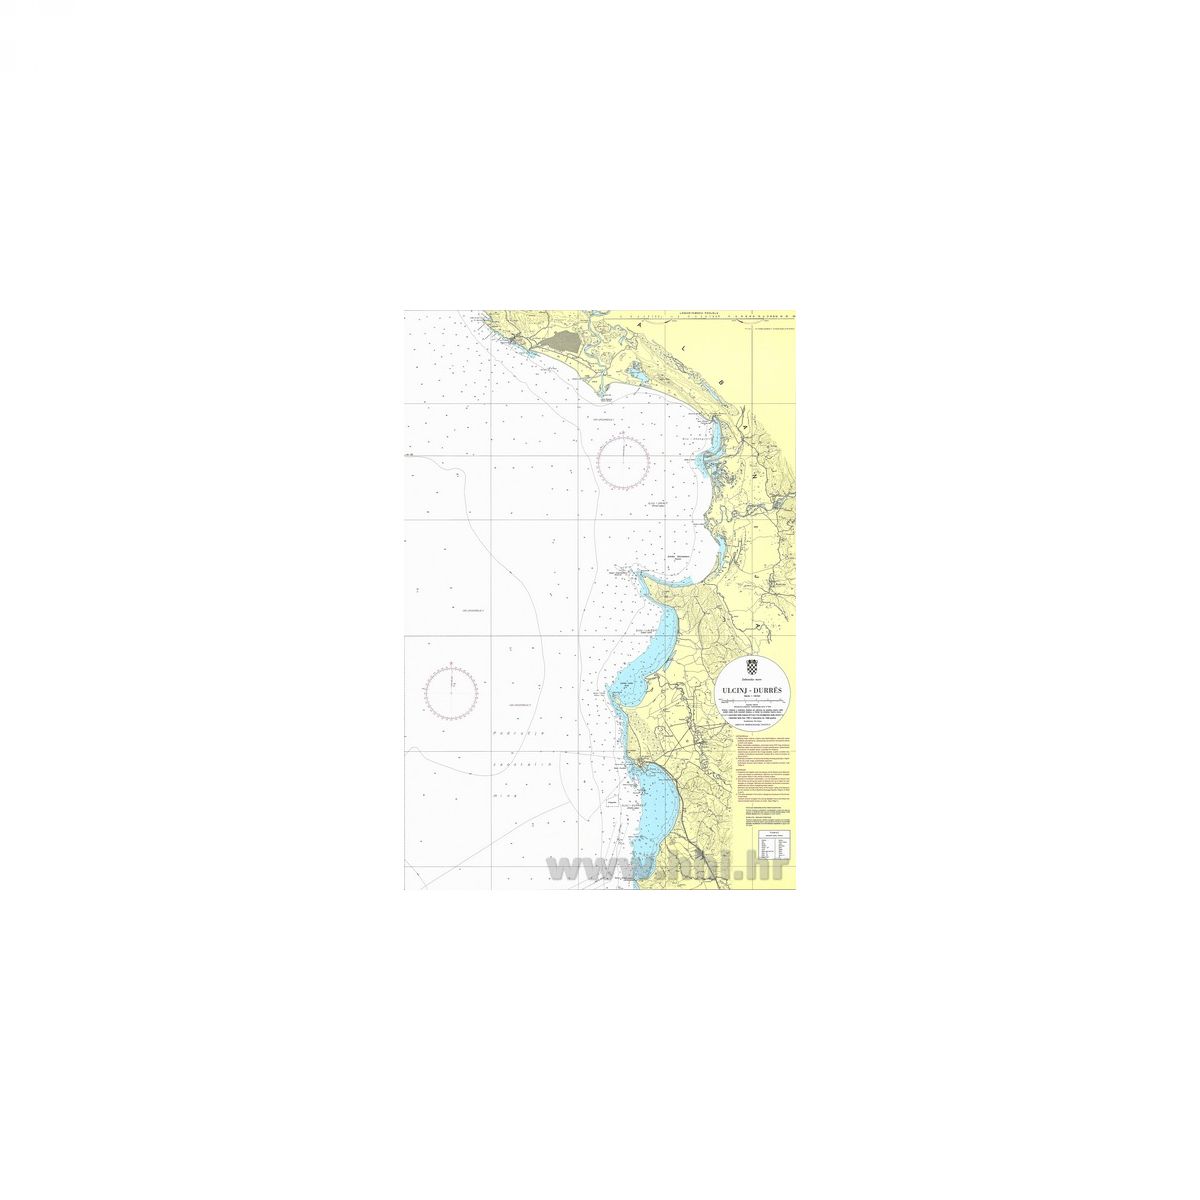 Karta pomorska 100-30 obalna Ulcinj – Durres